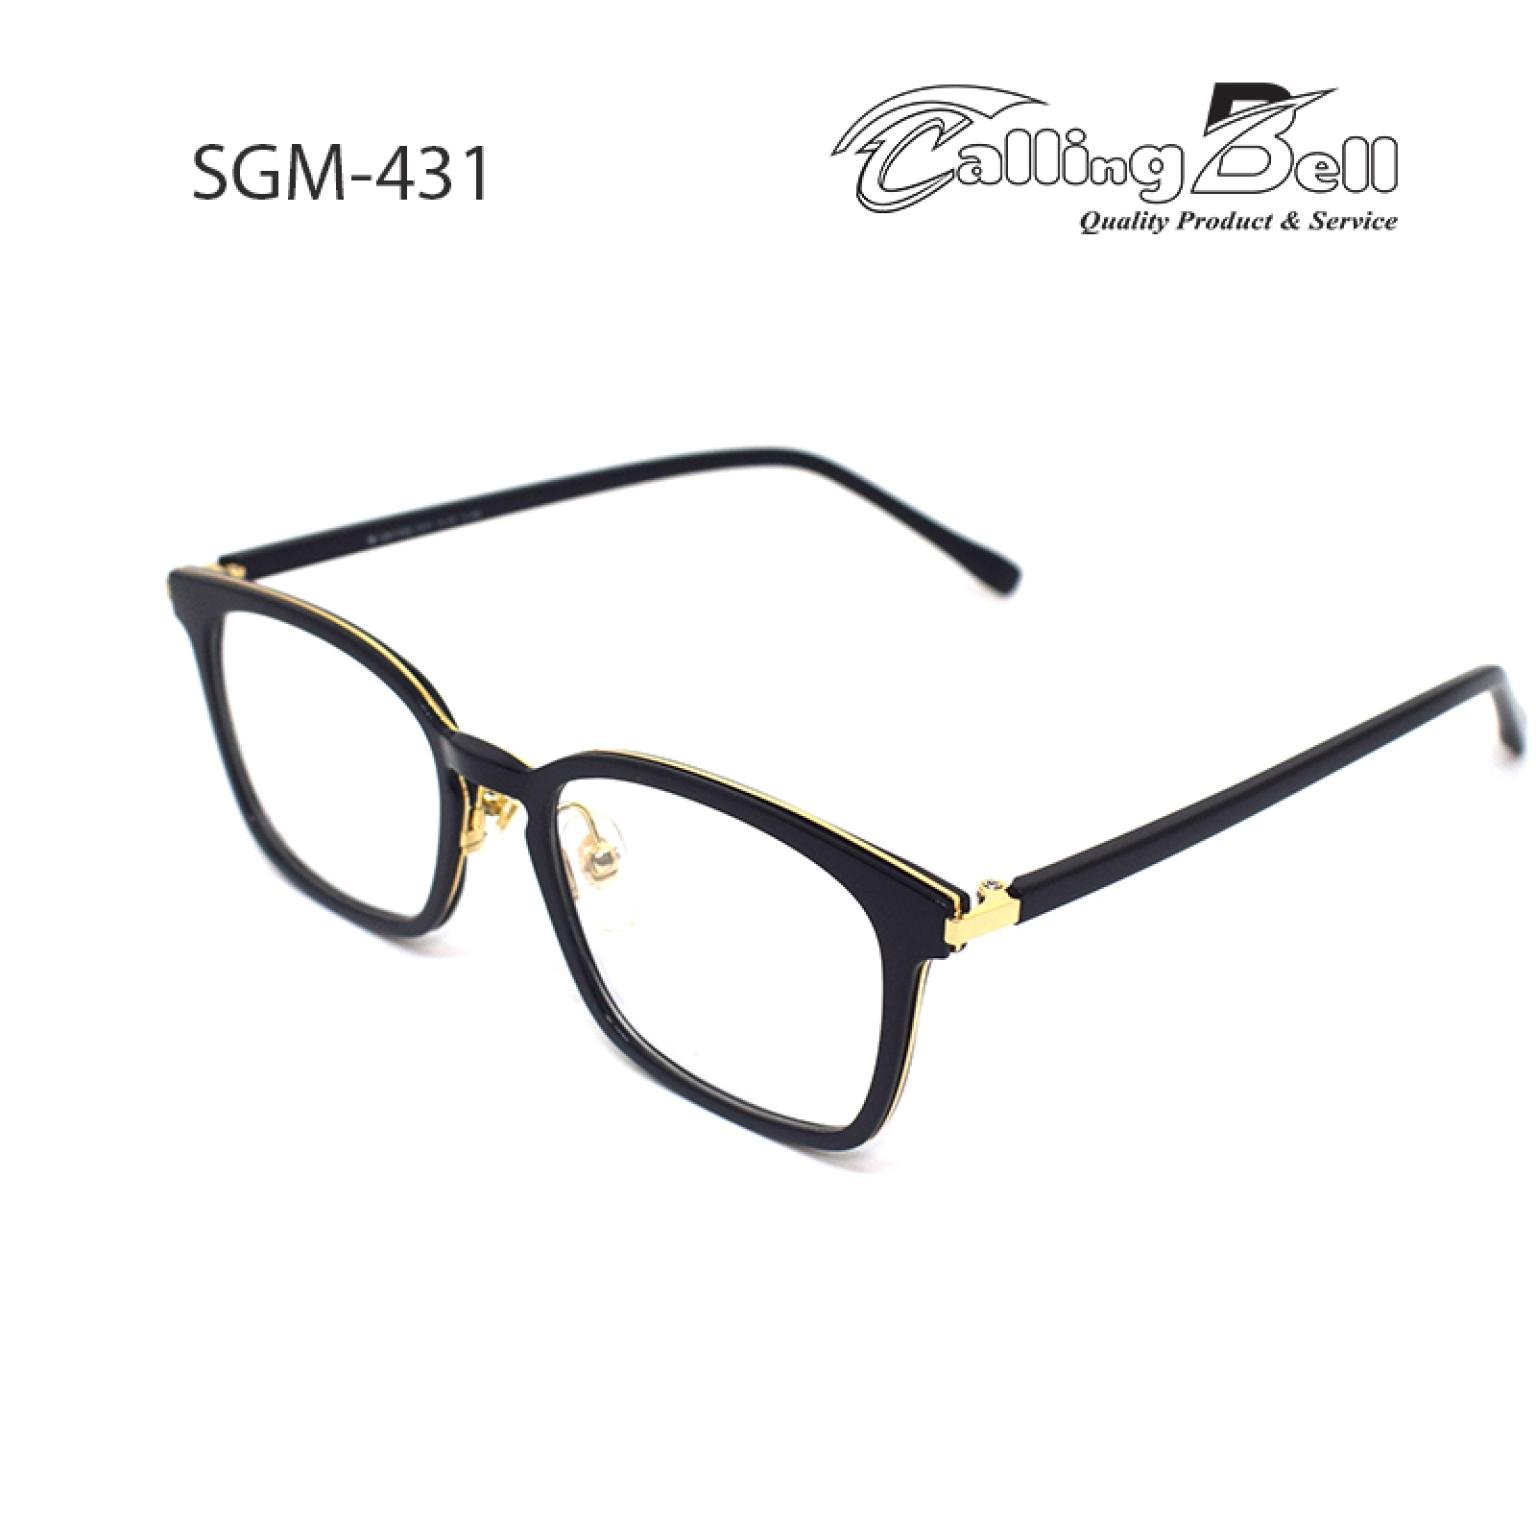 Glossy Black With Golden Rectangular Men's Women Prescription Optical Frame Eye Glasses